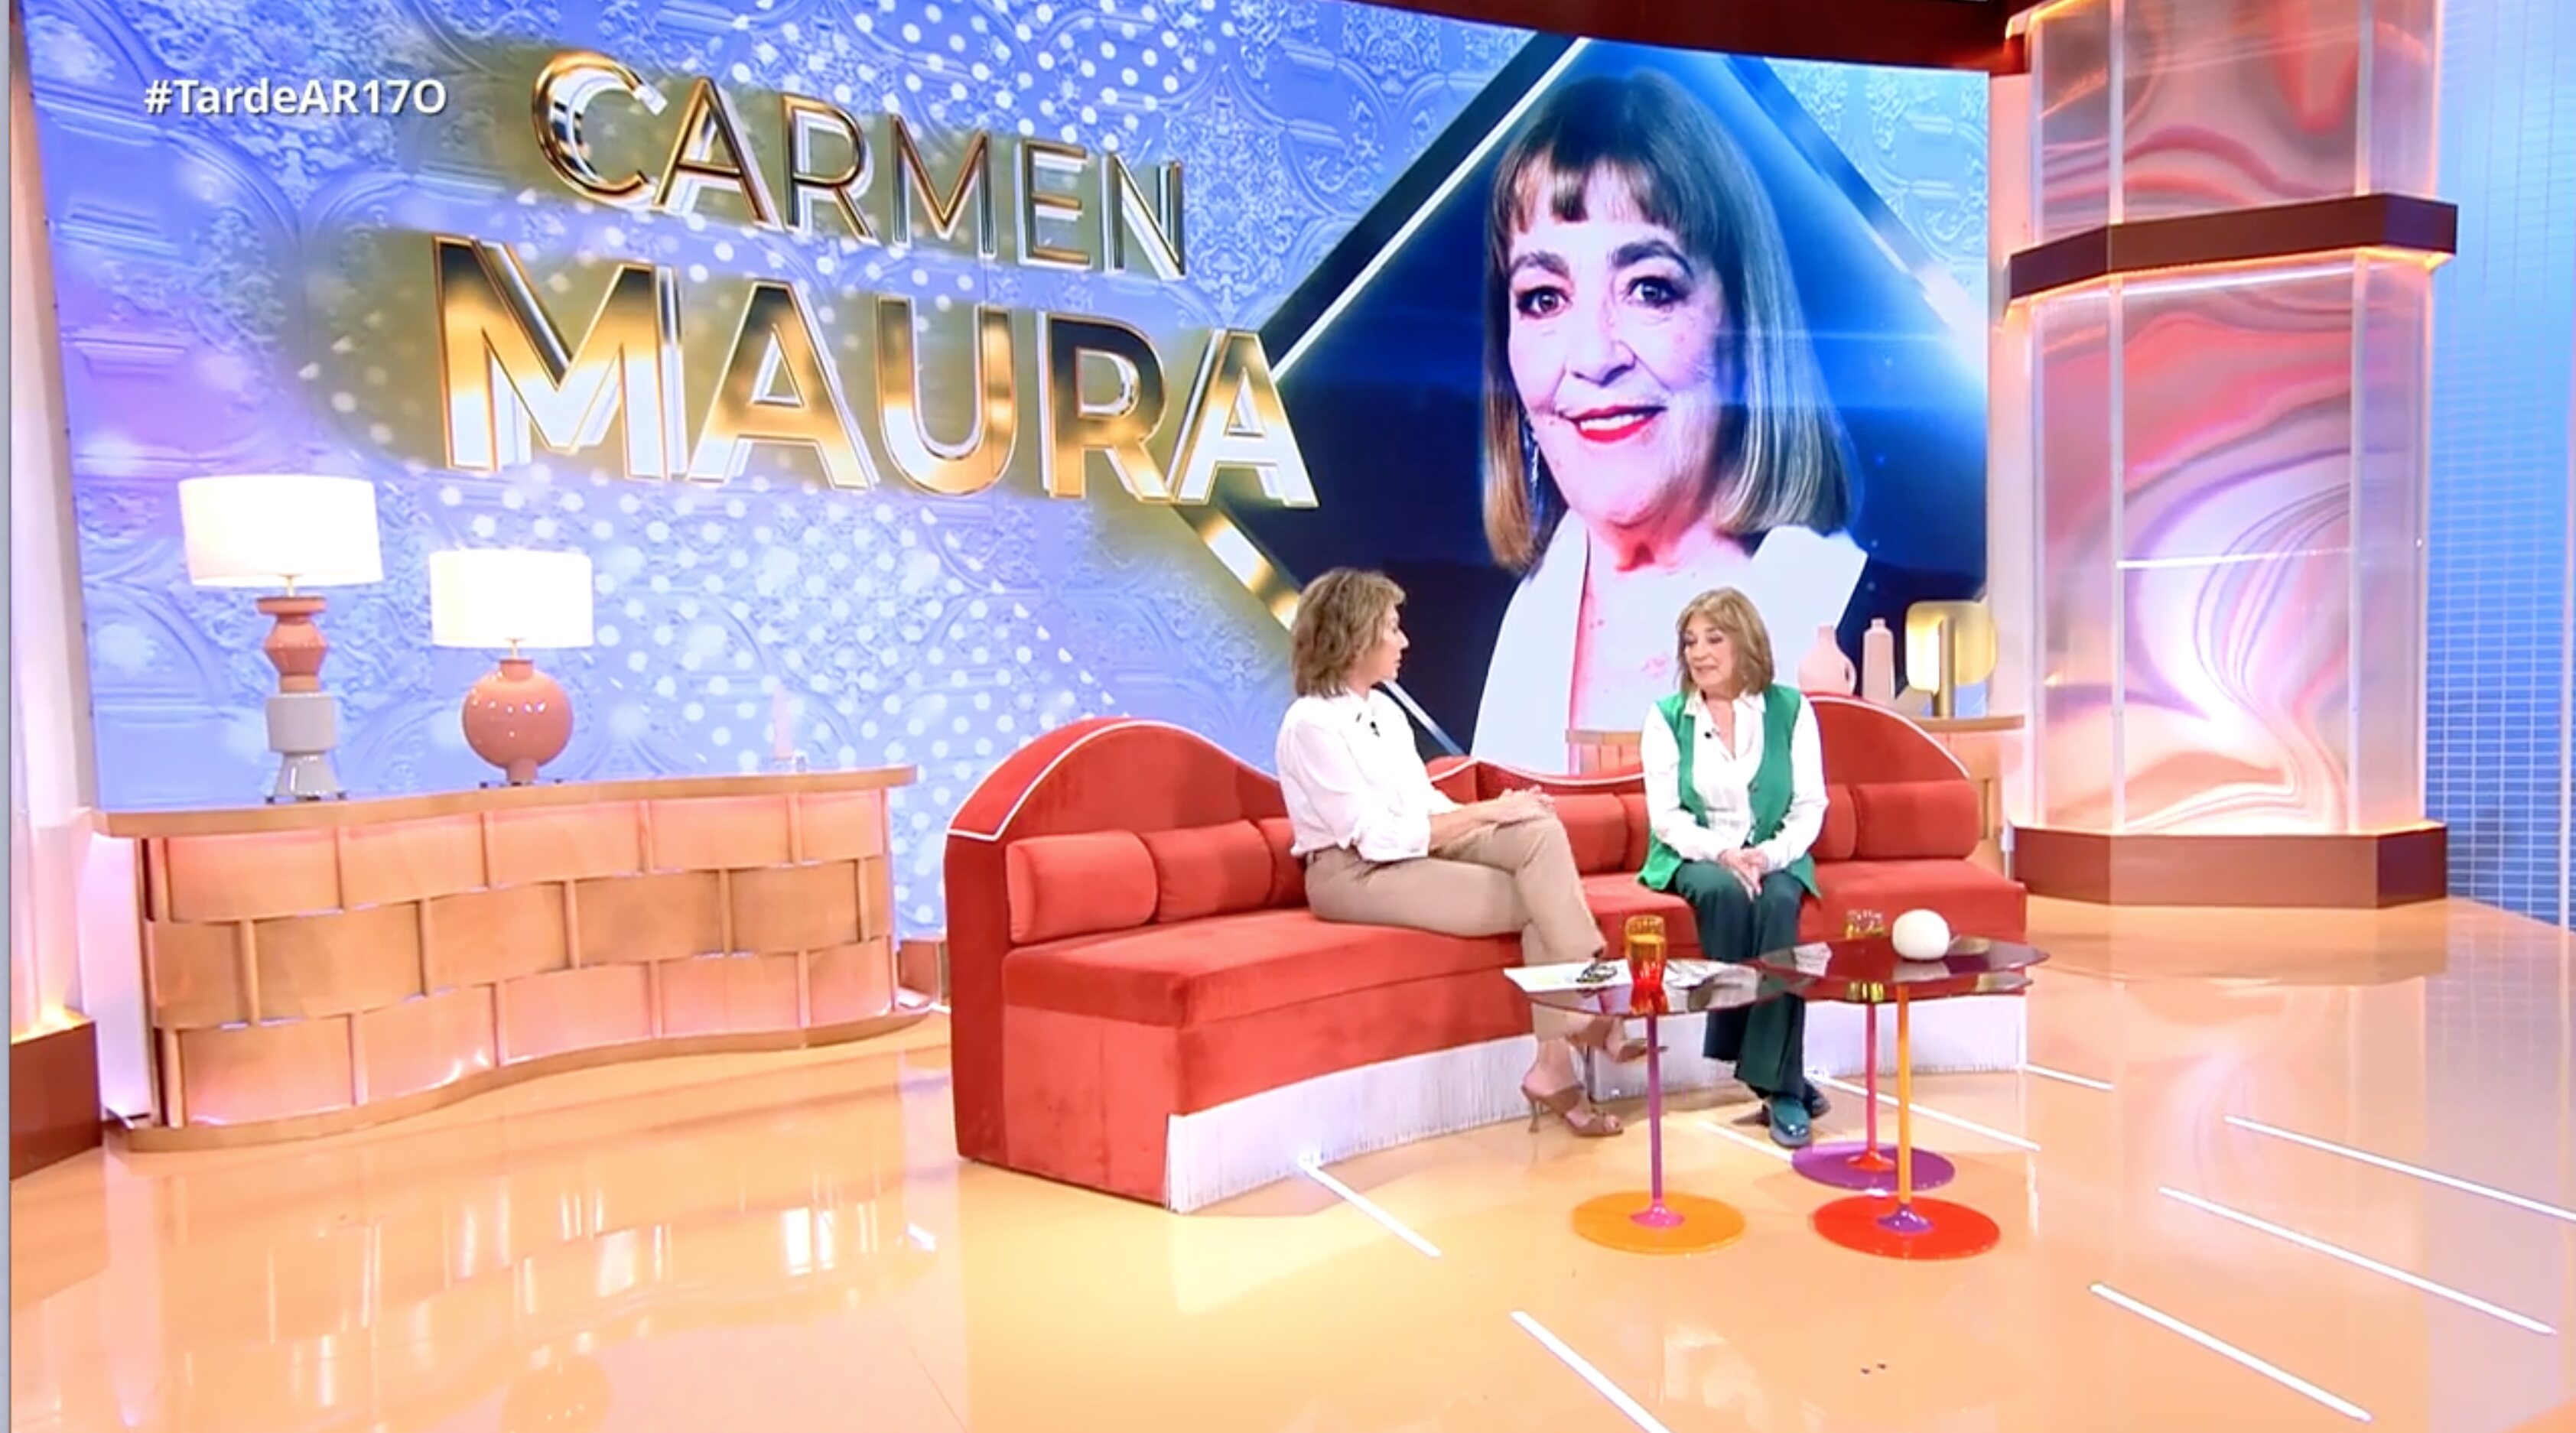 Carmen Maura ha estado en 'TardeAR' pra hablar de su última película | Foto: Telecinco.es